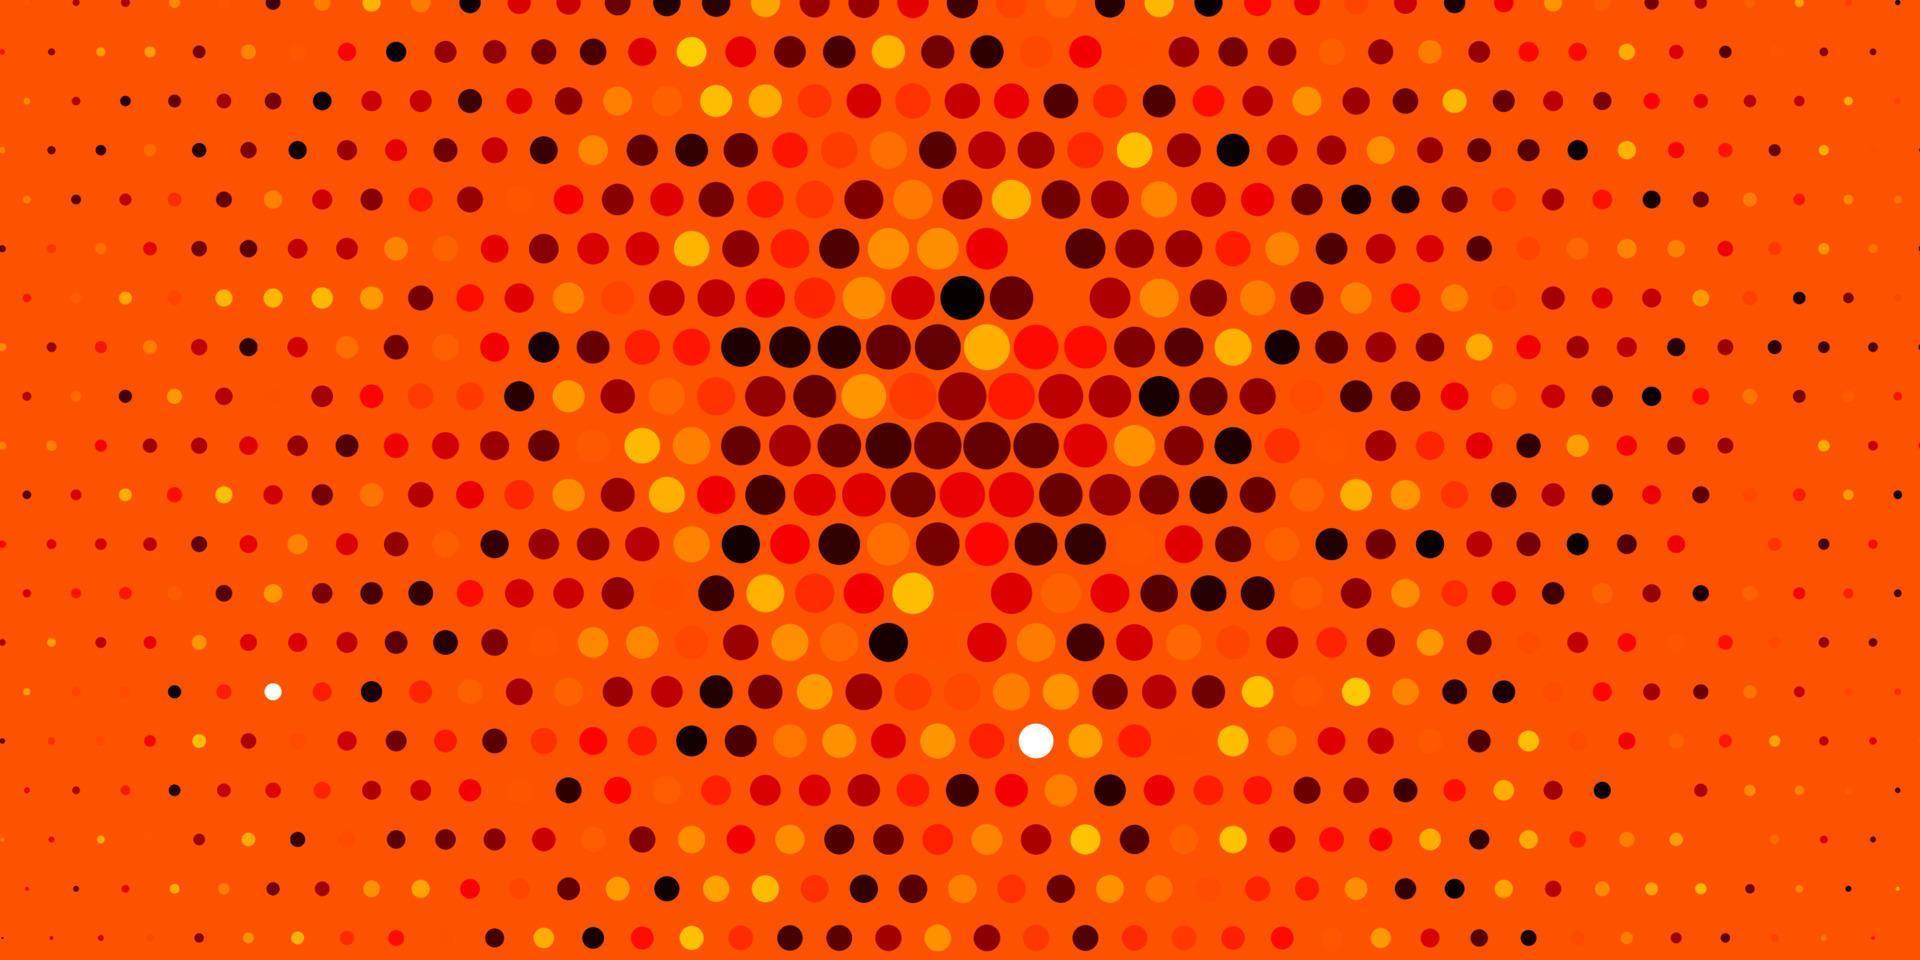 padrão de vetor laranja claro com esferas.